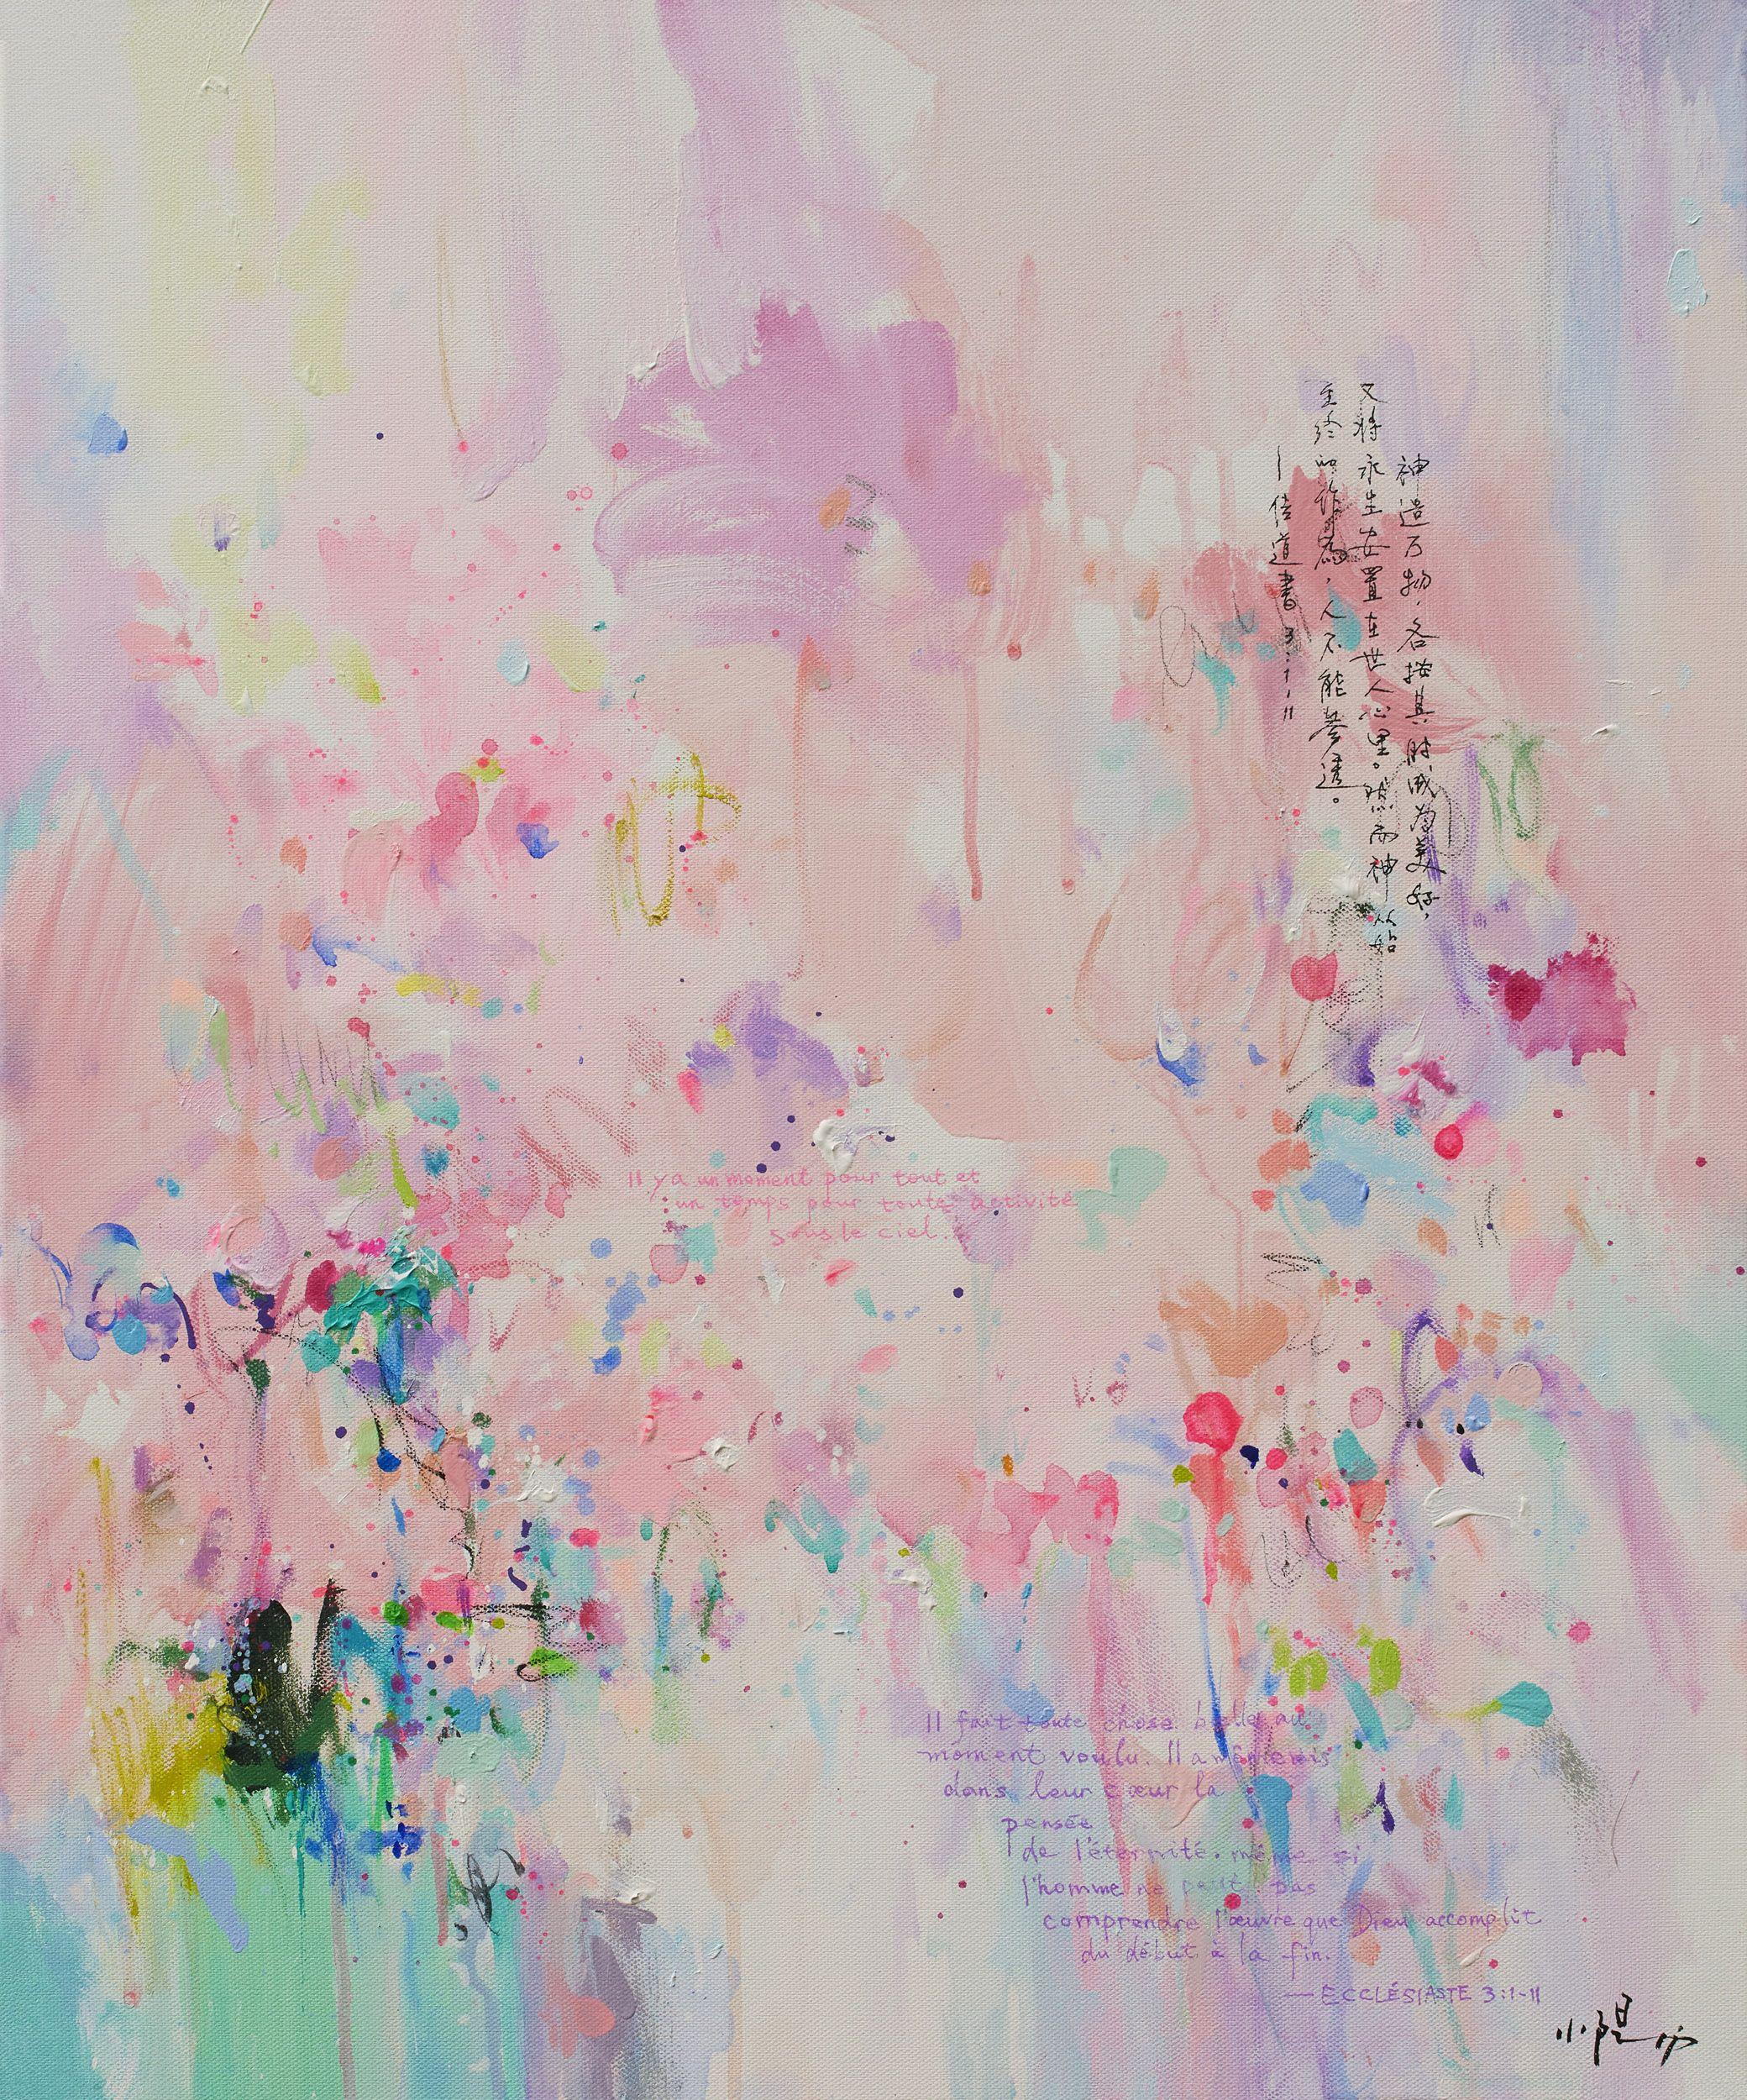 Abstract Print Xiaoyang Galas - Feeling R - Impression giclée d'art, numérique sur papier aquarelle